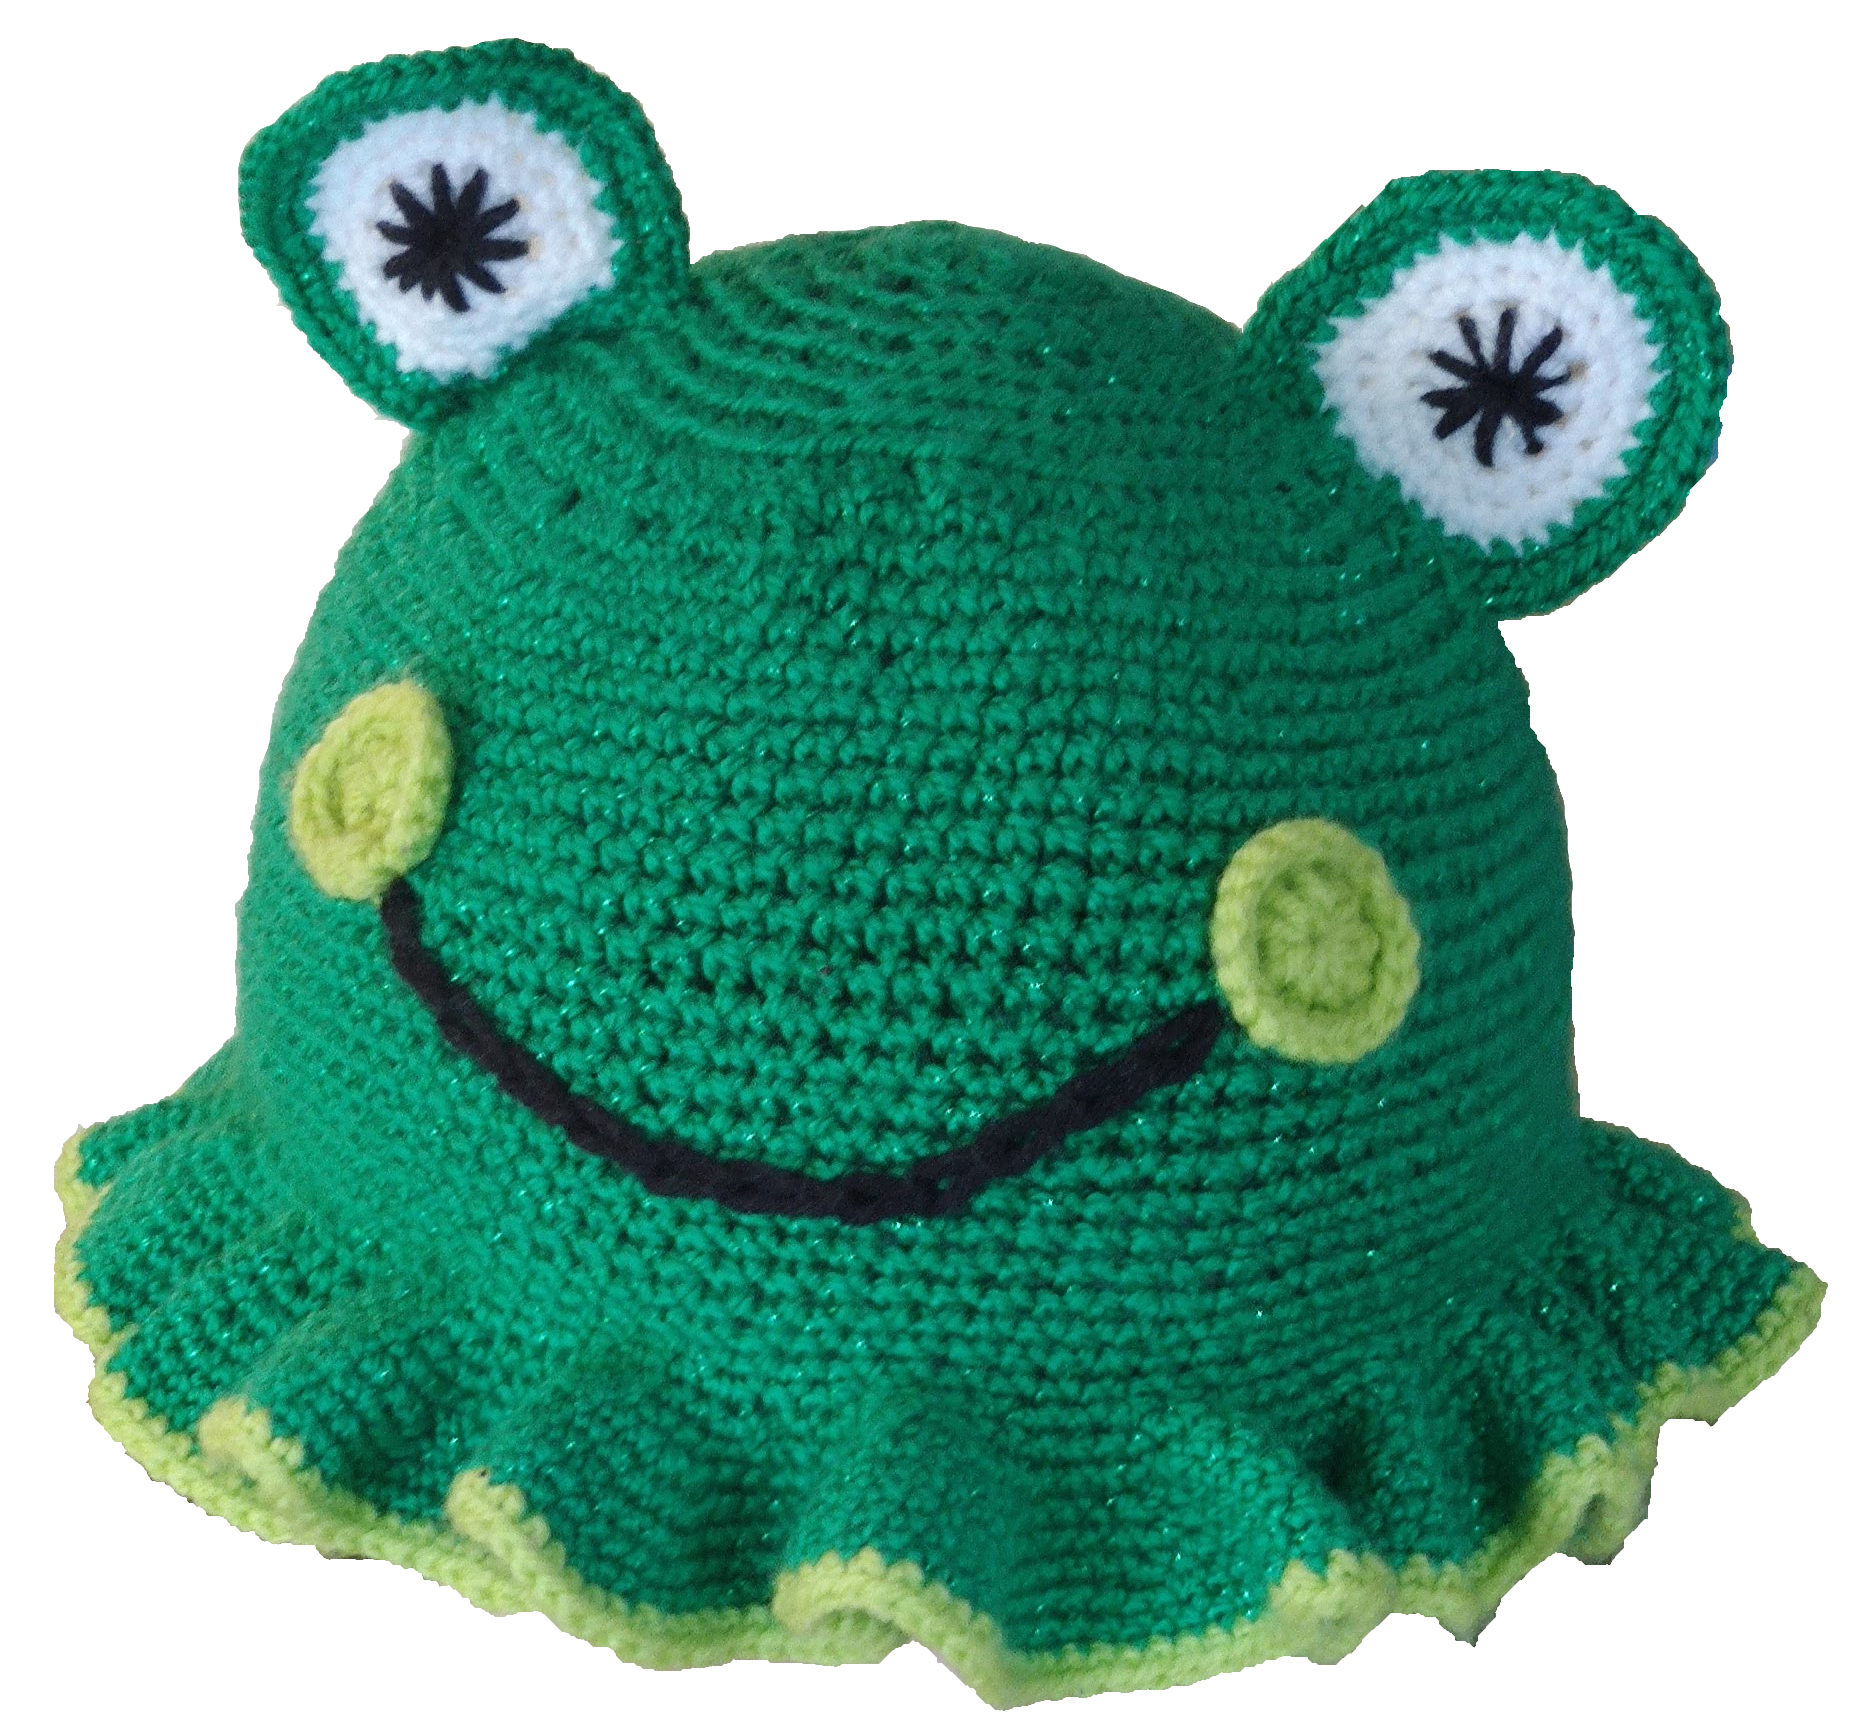 A crochet frog bucket hat